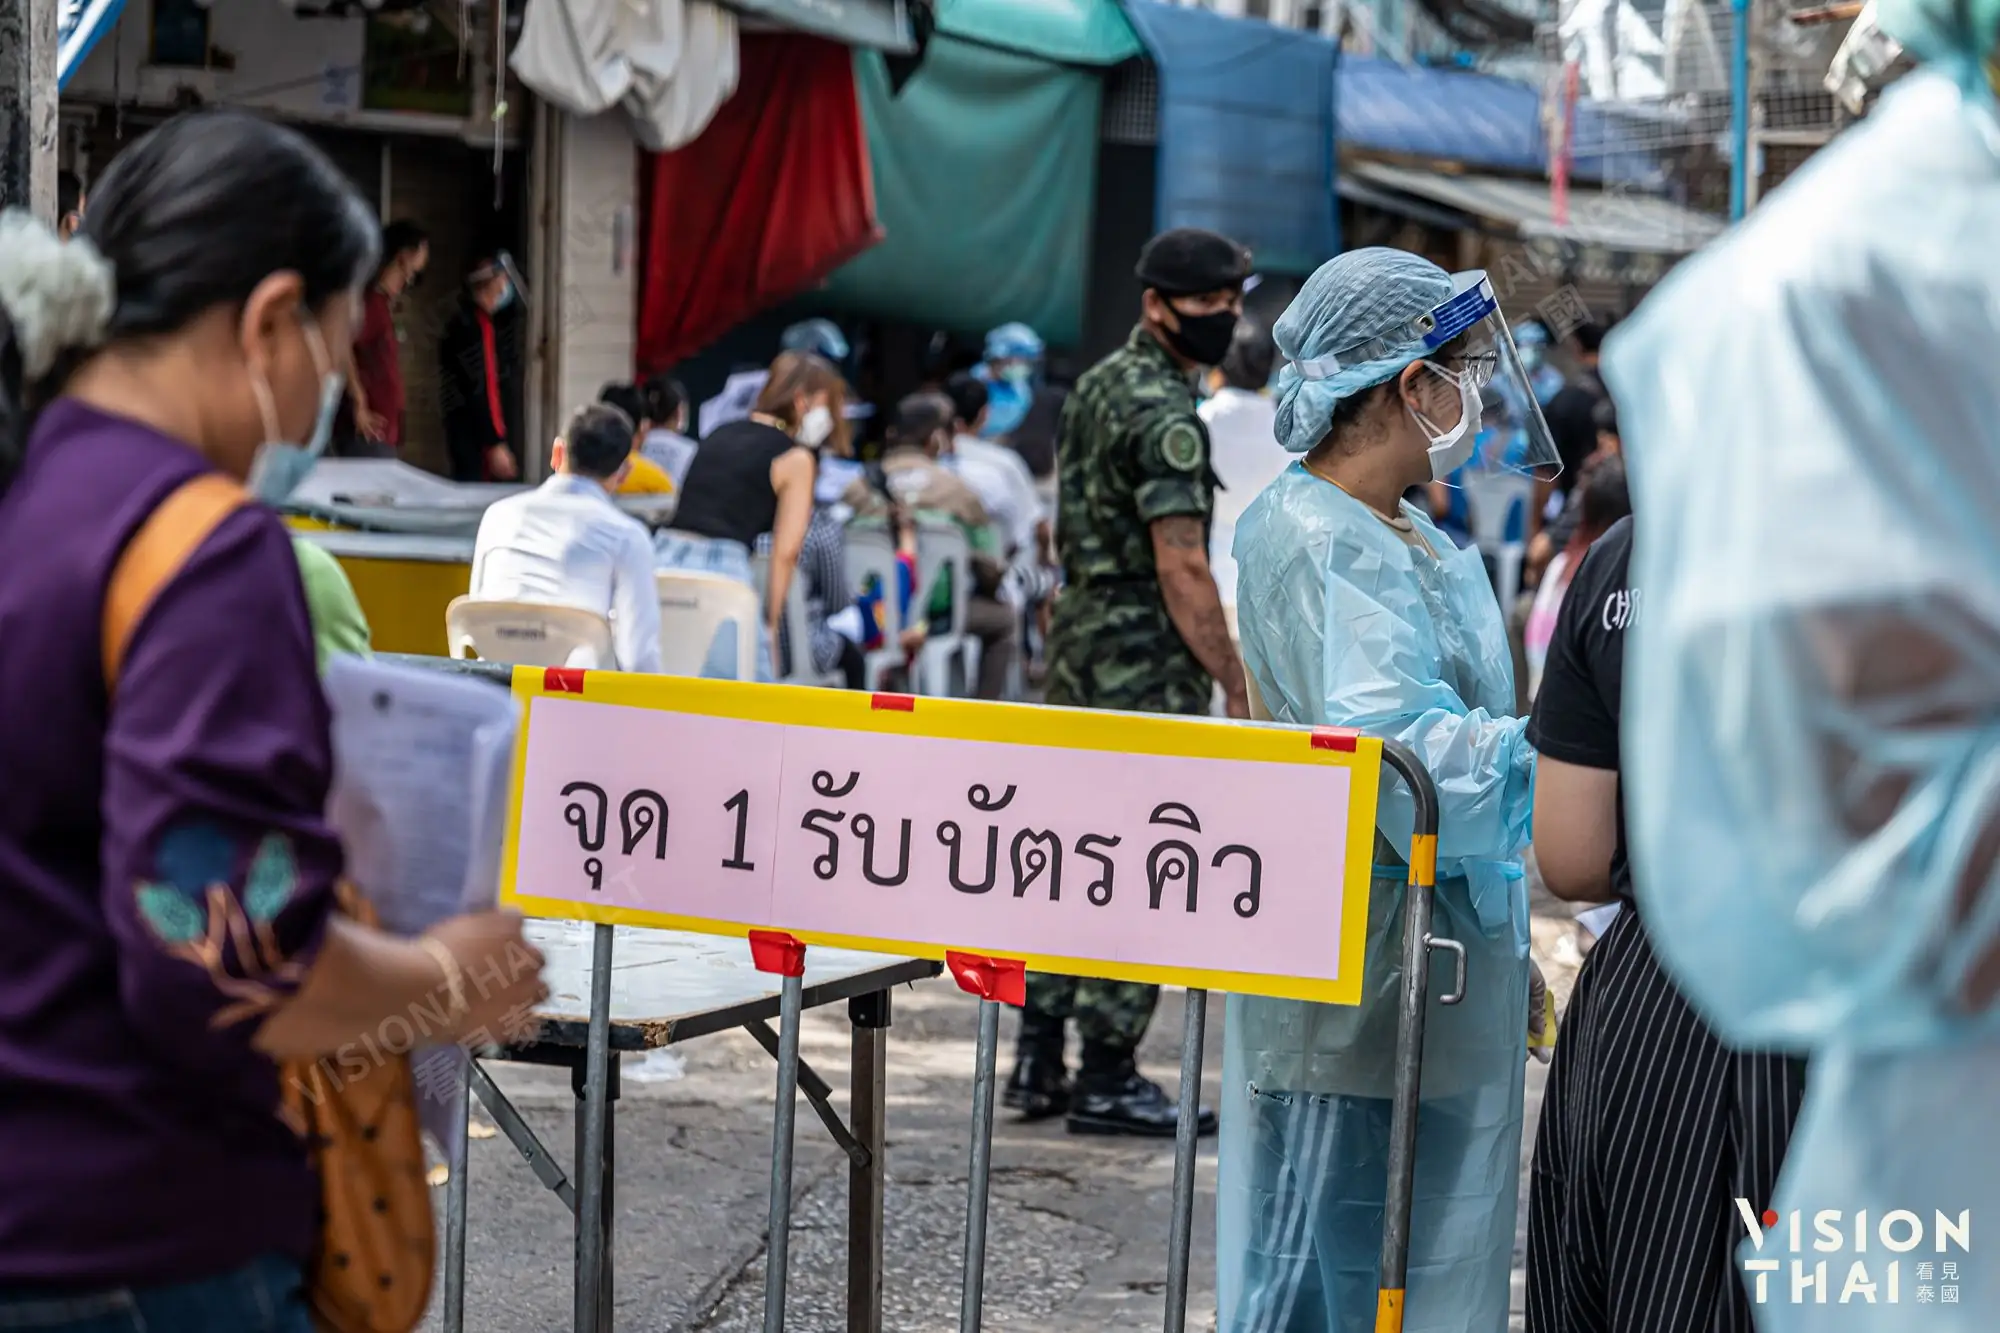  曼谷商圈市場傳疫情 今起大規模篩檢（圖片來源：VISION THAI看見泰國）